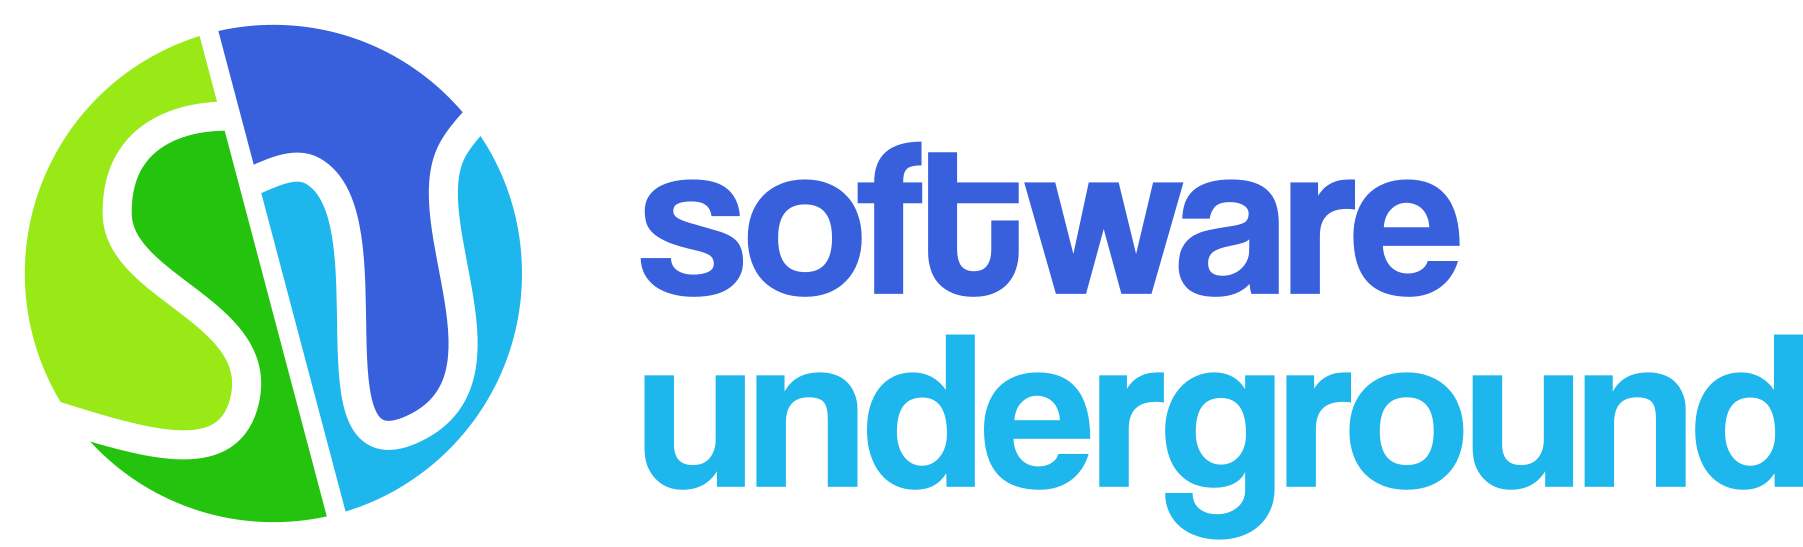 Software Underground